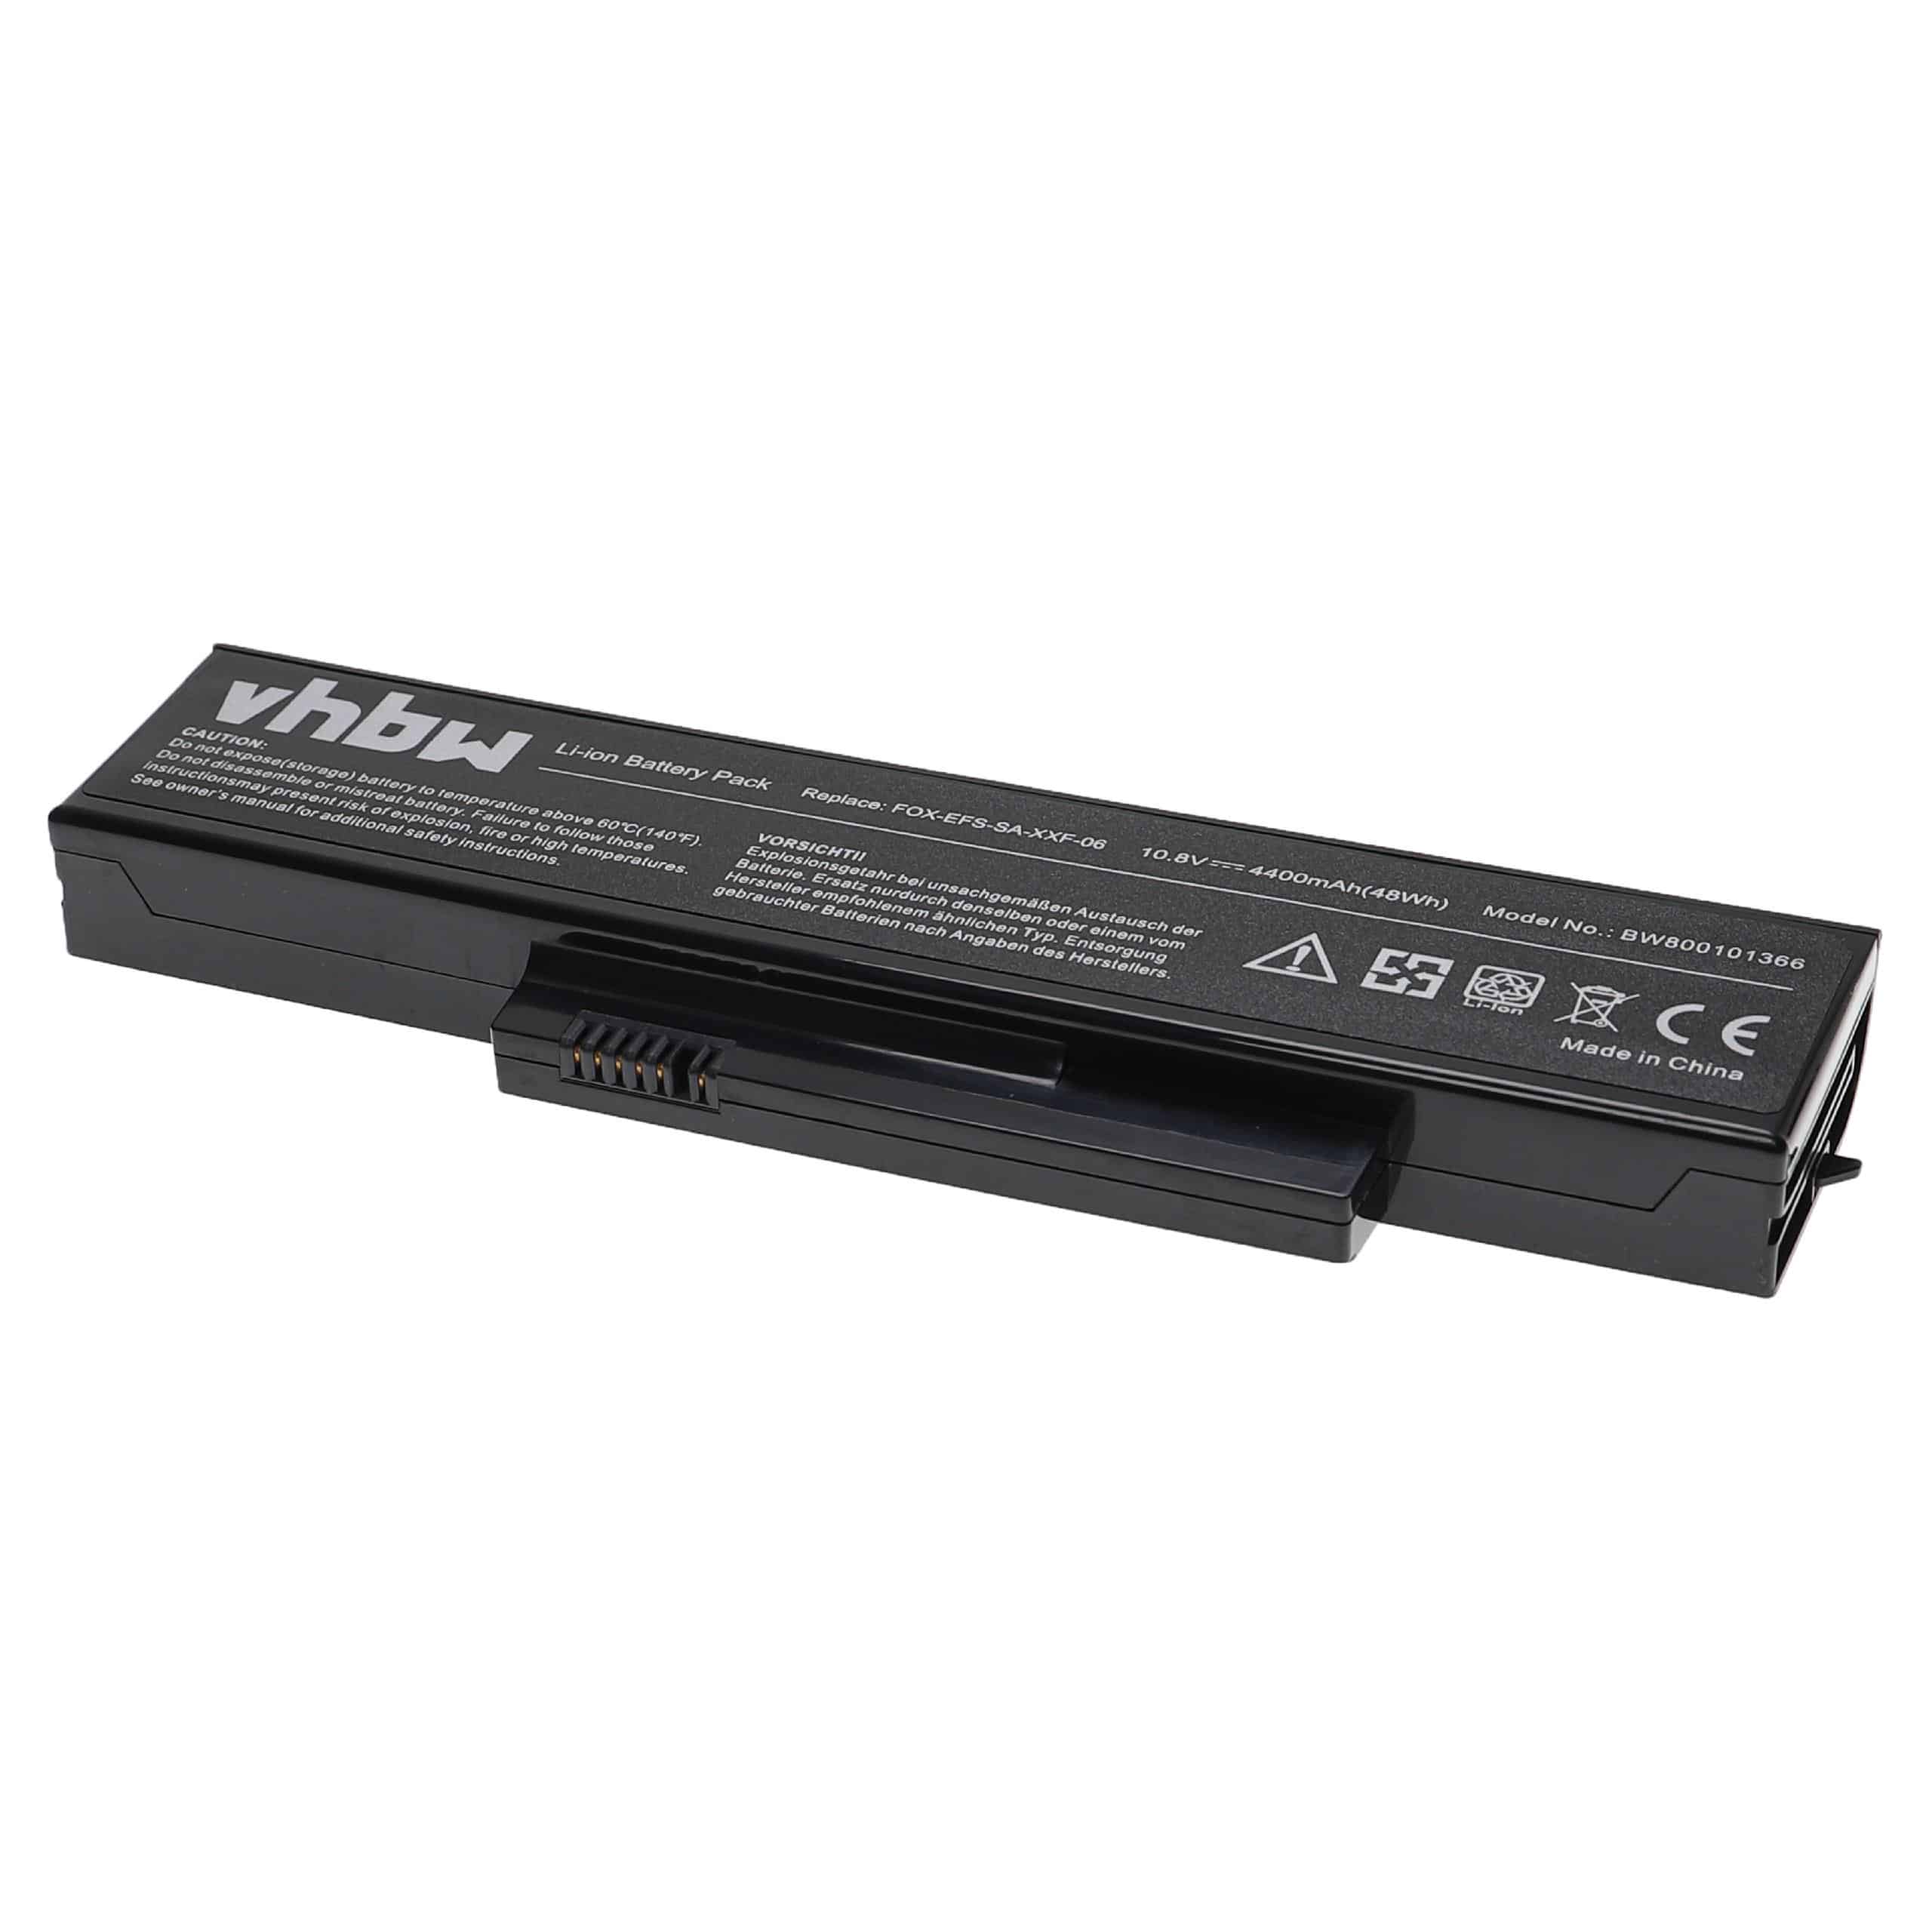 Notebook Battery Replacement for Fujitsu-Siemens FOX-EFS-SA-XXF-06, FOX-EFS-SA-XXF-04 - 4400mAh 10.8V Li-Ion